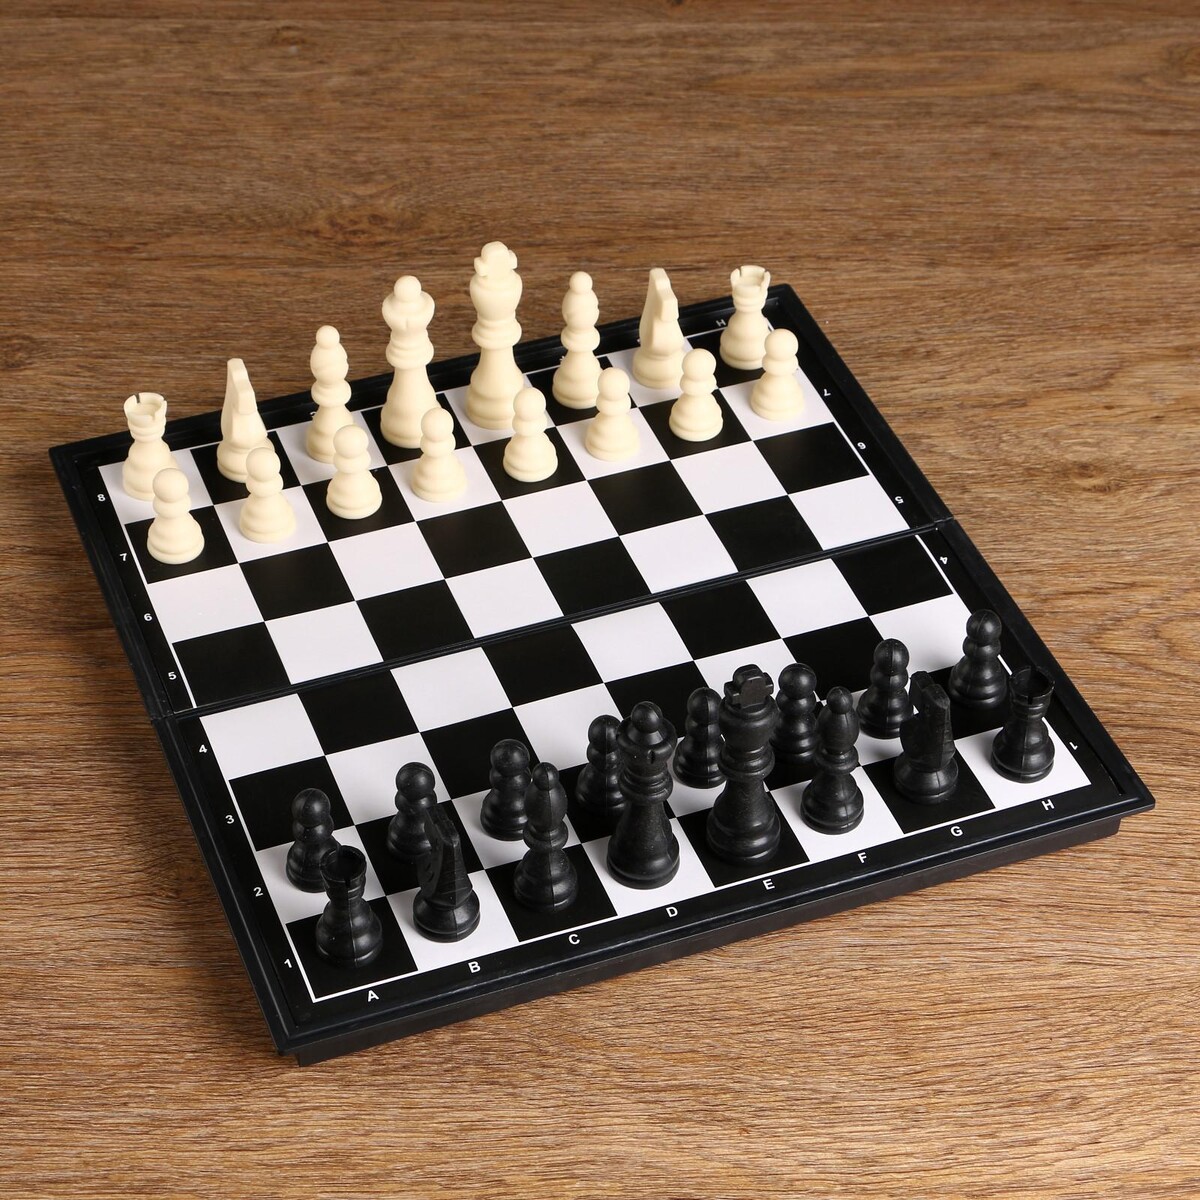 Шахматы, доска пластик 31 х 31 см, король 8 см, пешка 3.8 см шахматы гроссмейстерские турнирные утяжеленные 40х40 см король h 10 5 см пешка 5 3 см